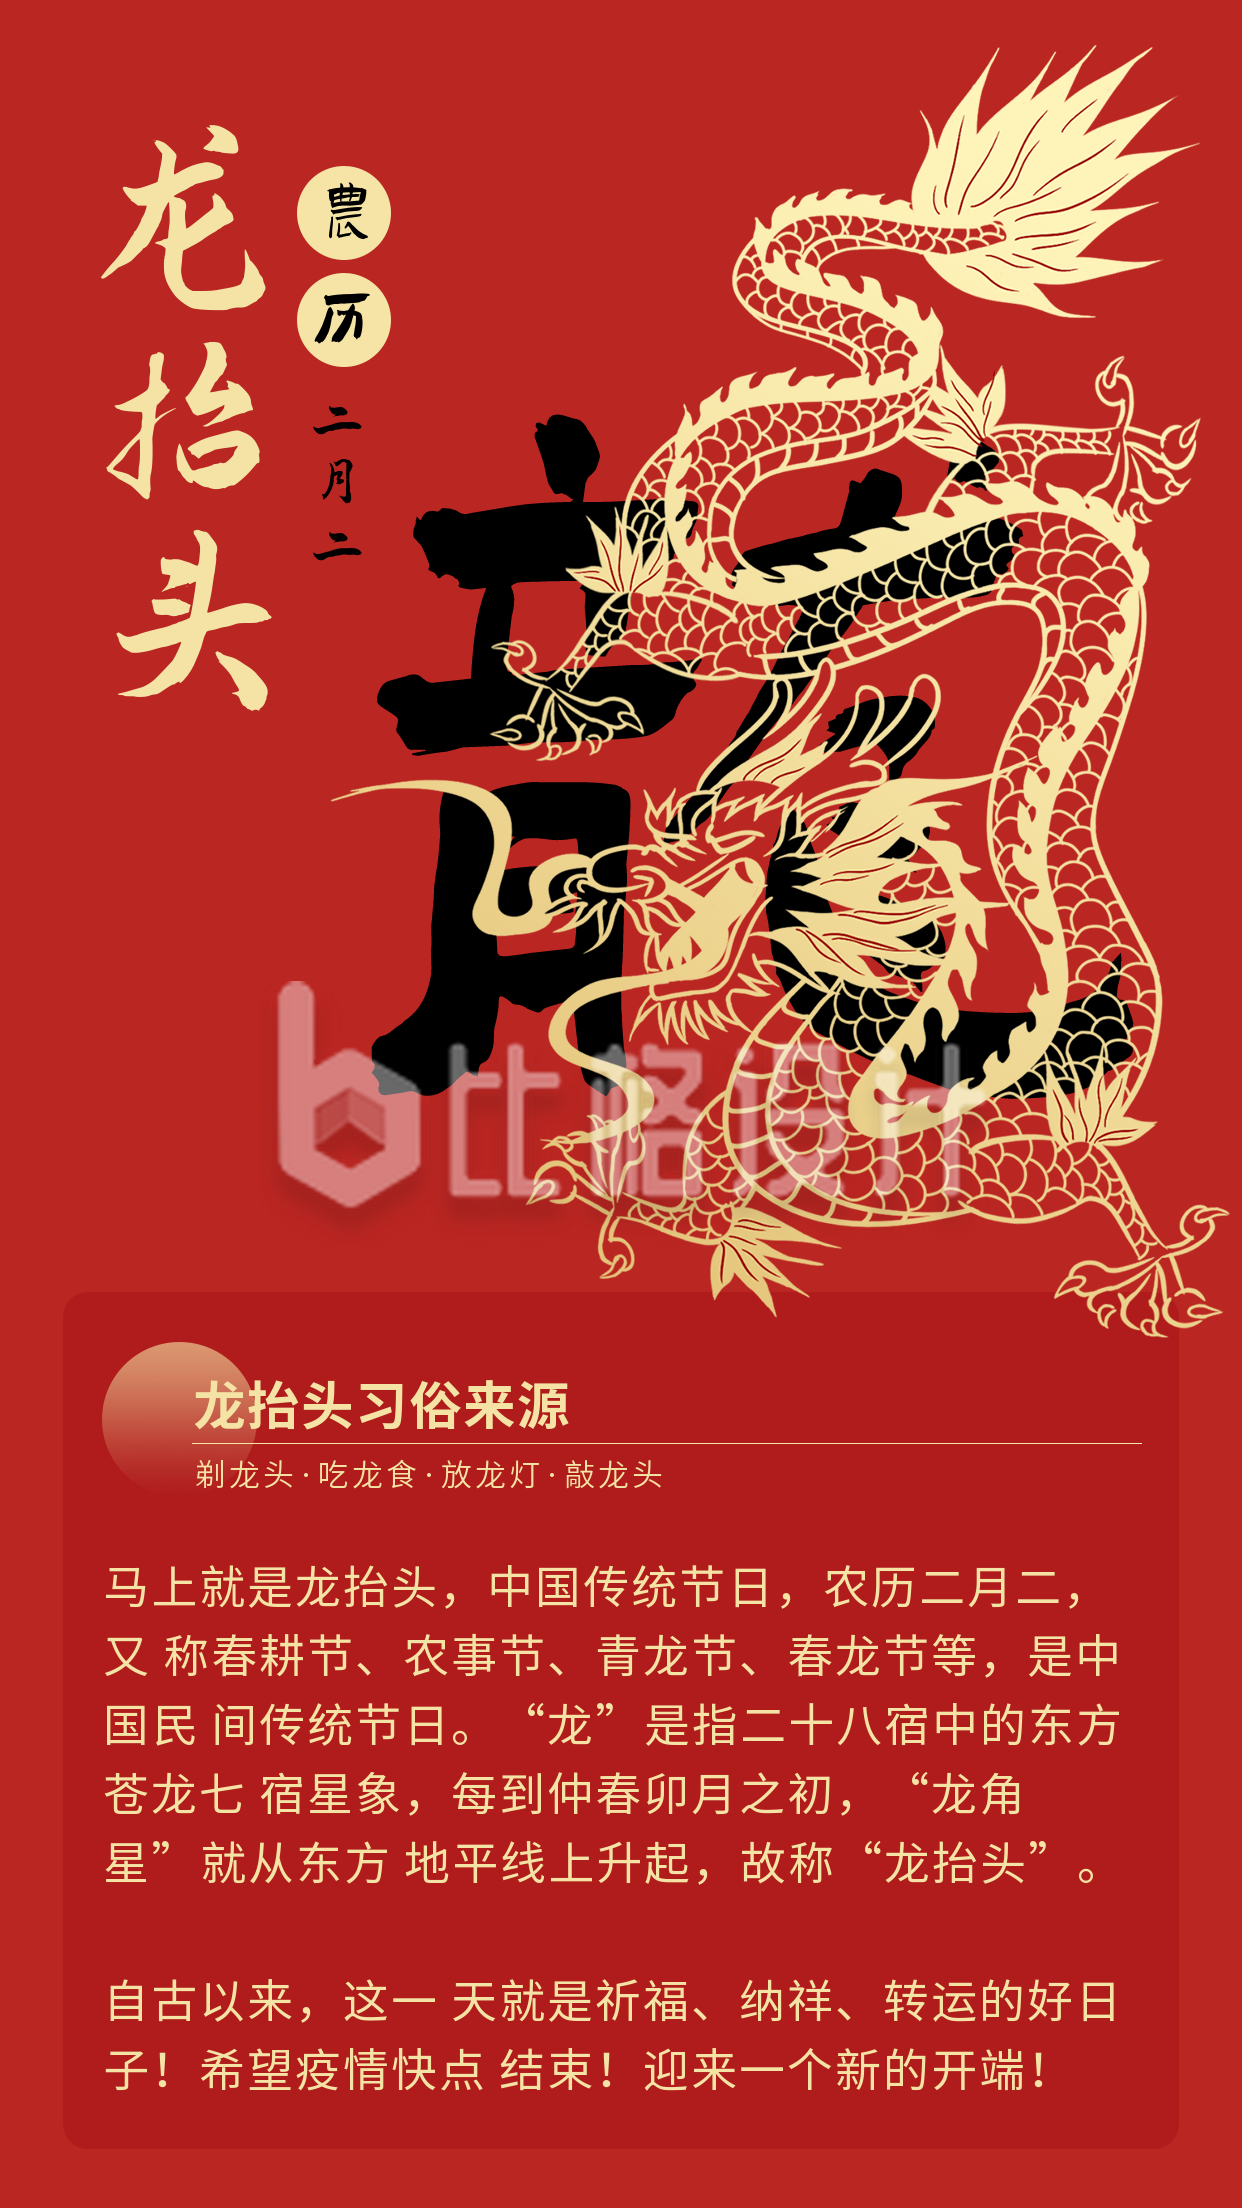 手绘中国传统节日龙抬头习俗竖版配图